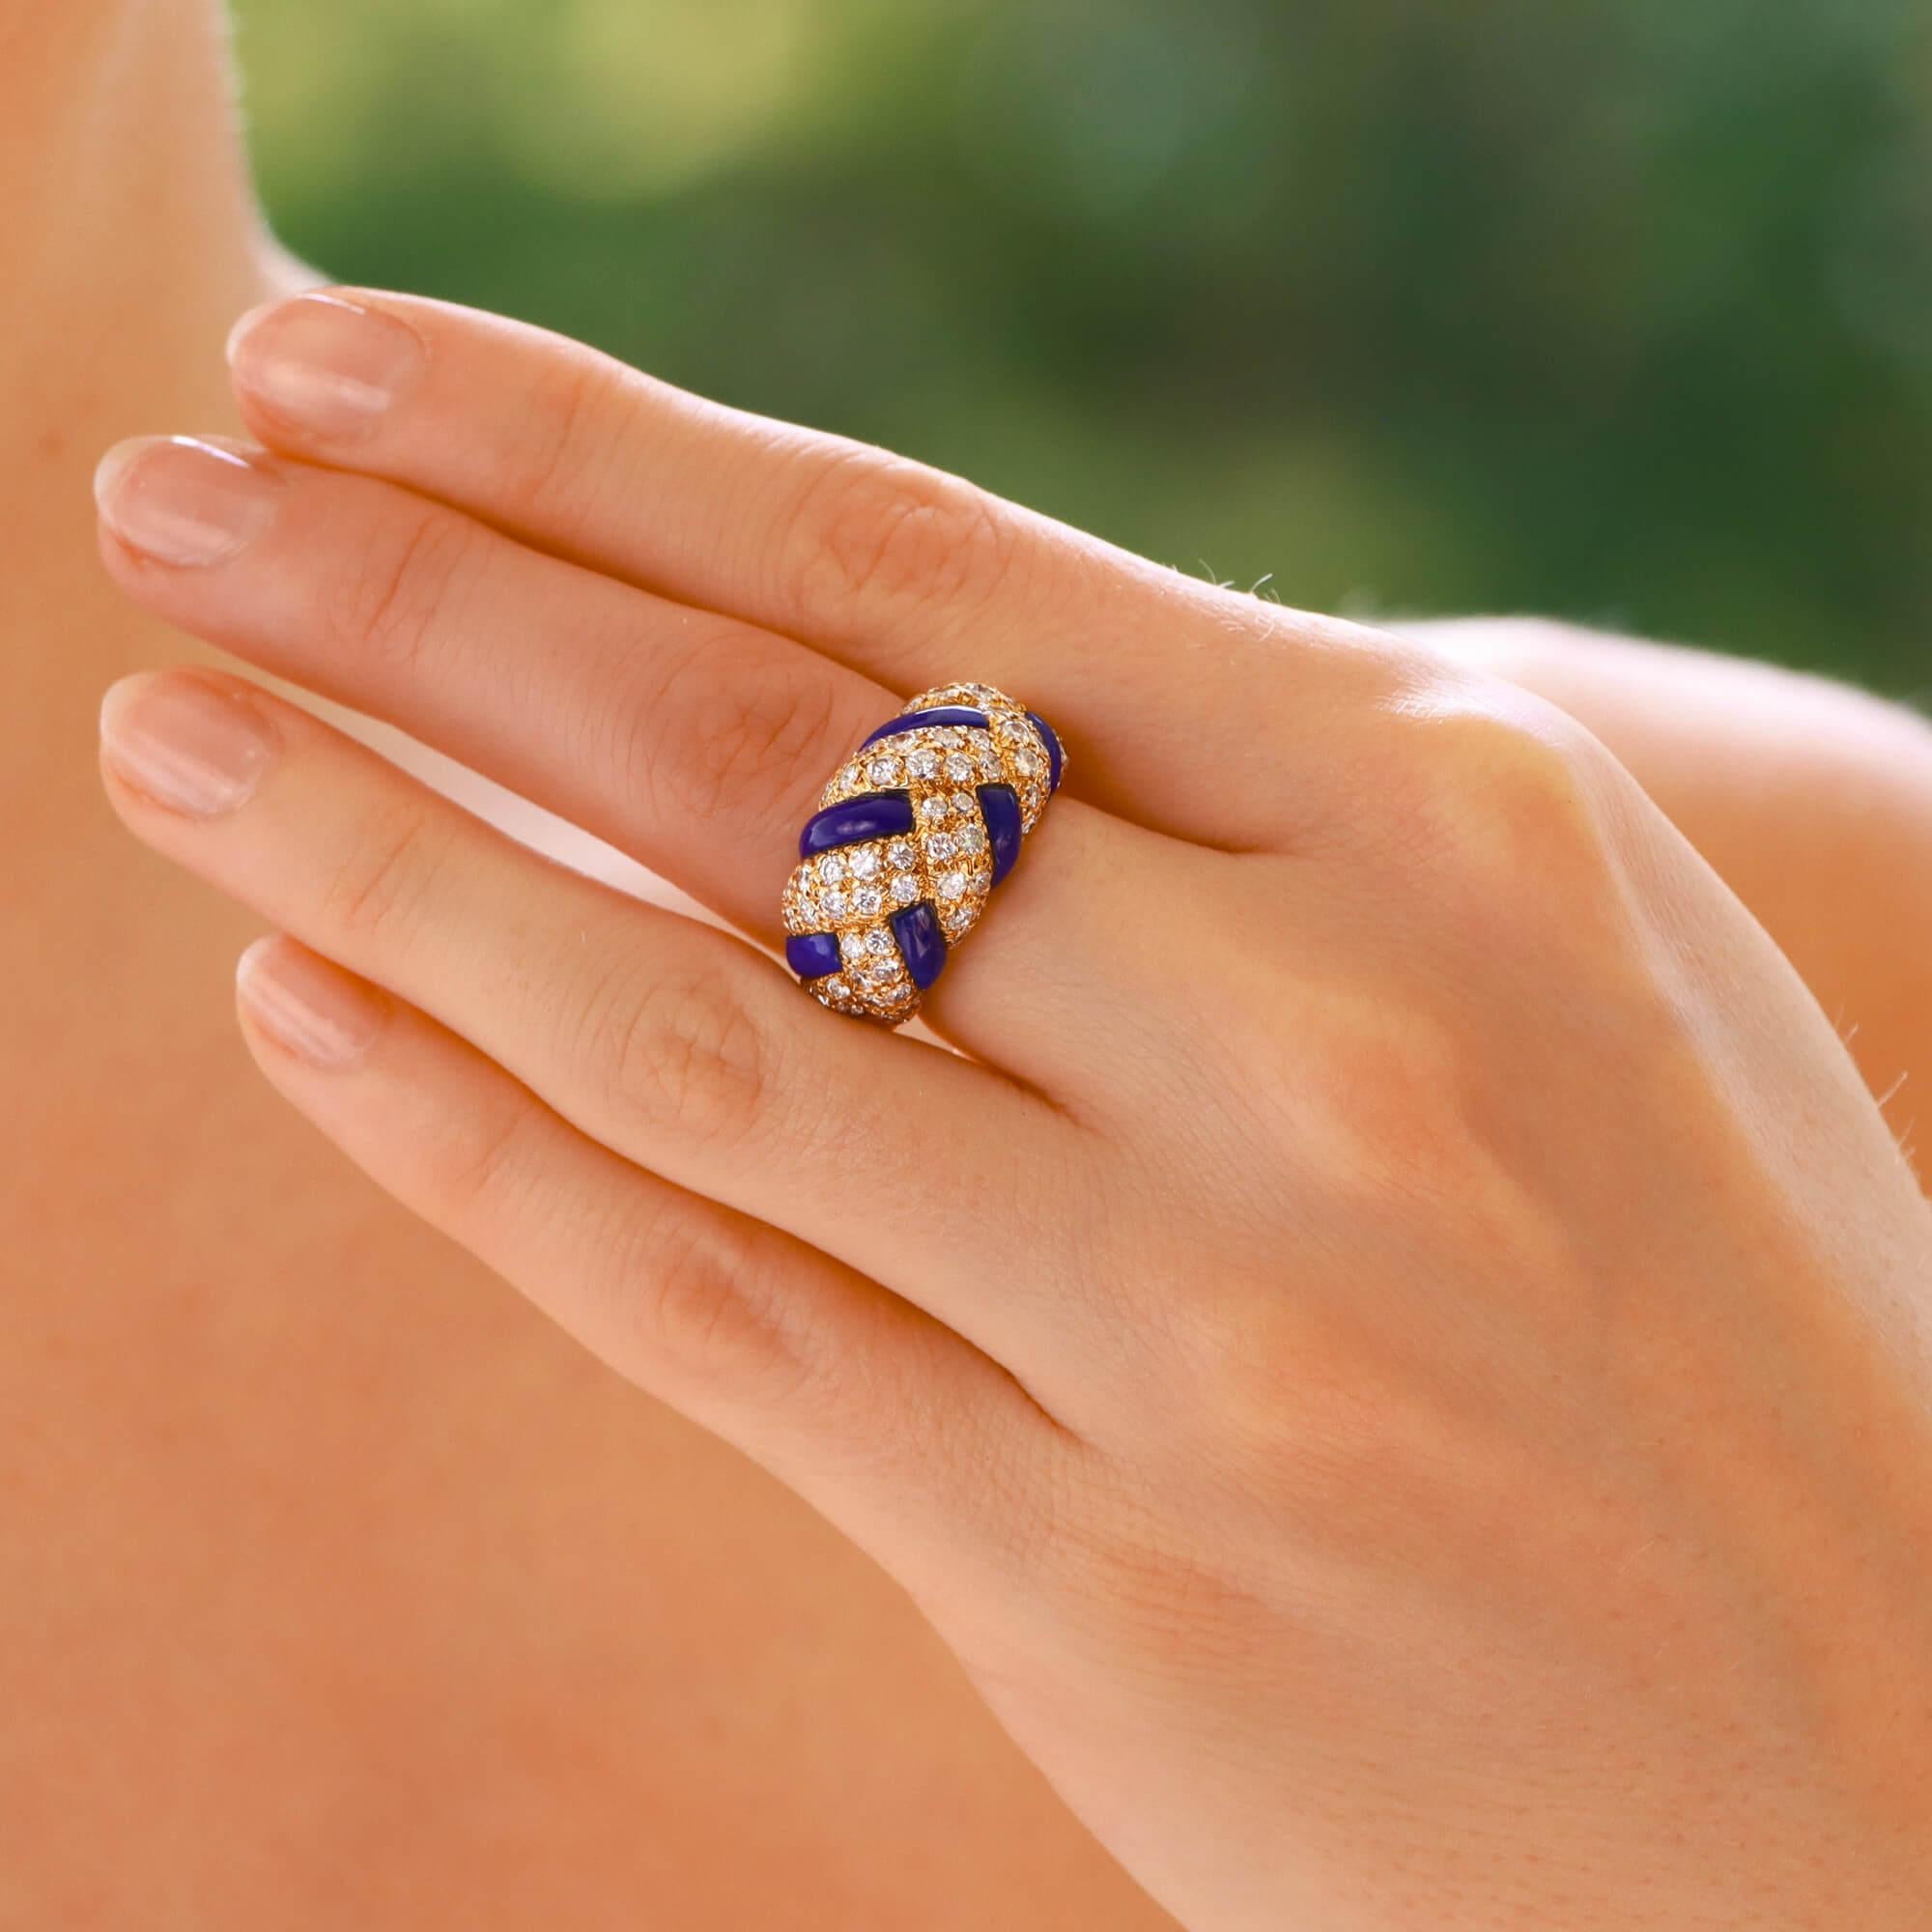 Eine schöne Vintage Van Cleef und Arpels Lapis und Diamant-Bombe Kleid Ring in 18k Gelbgold gesetzt.

Der Ring zeichnet sich durch ein einzigartiges geflochtenes Design aus Lapislazuli und gepflasterten Diamantplatten aus. Der Kontrast zwischen dem